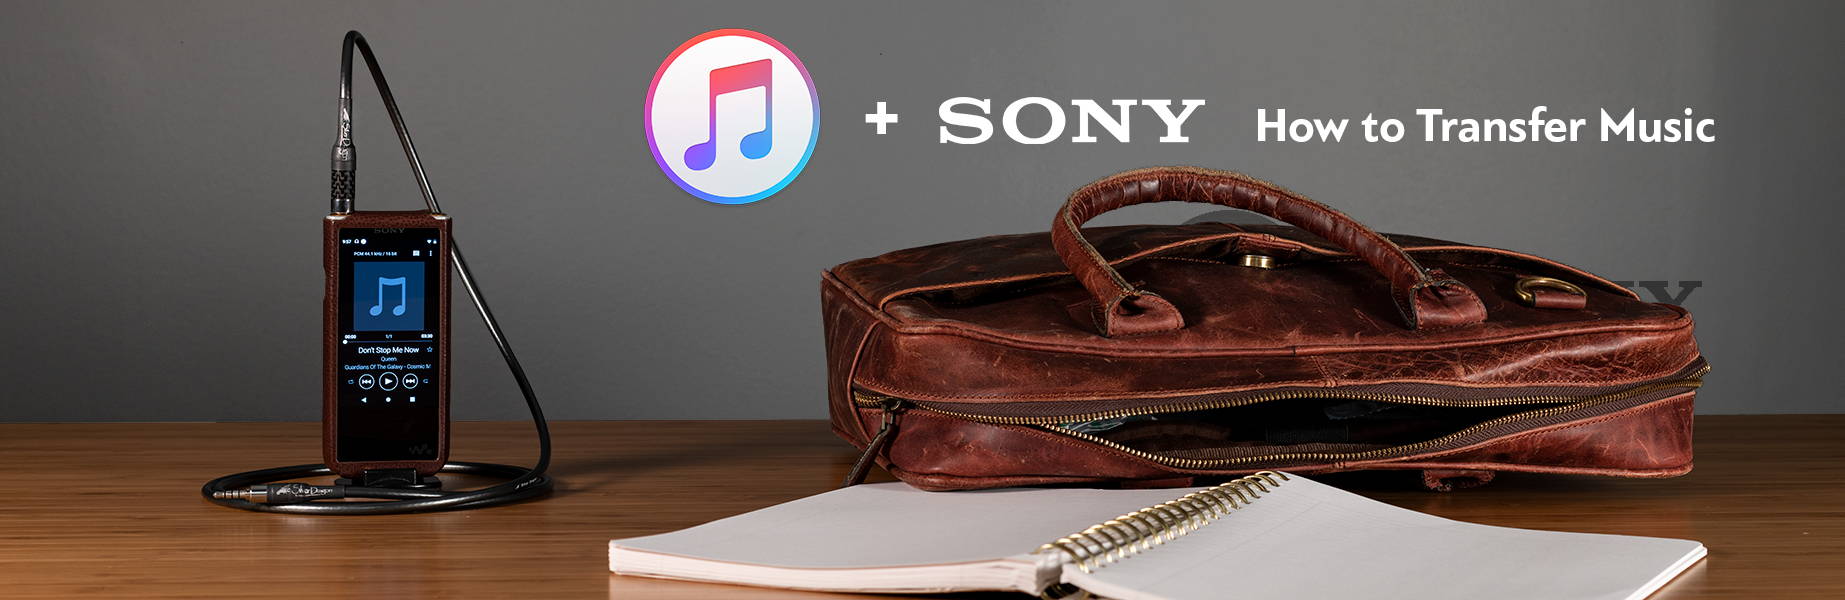 Sony DAPS + iTunes Banner